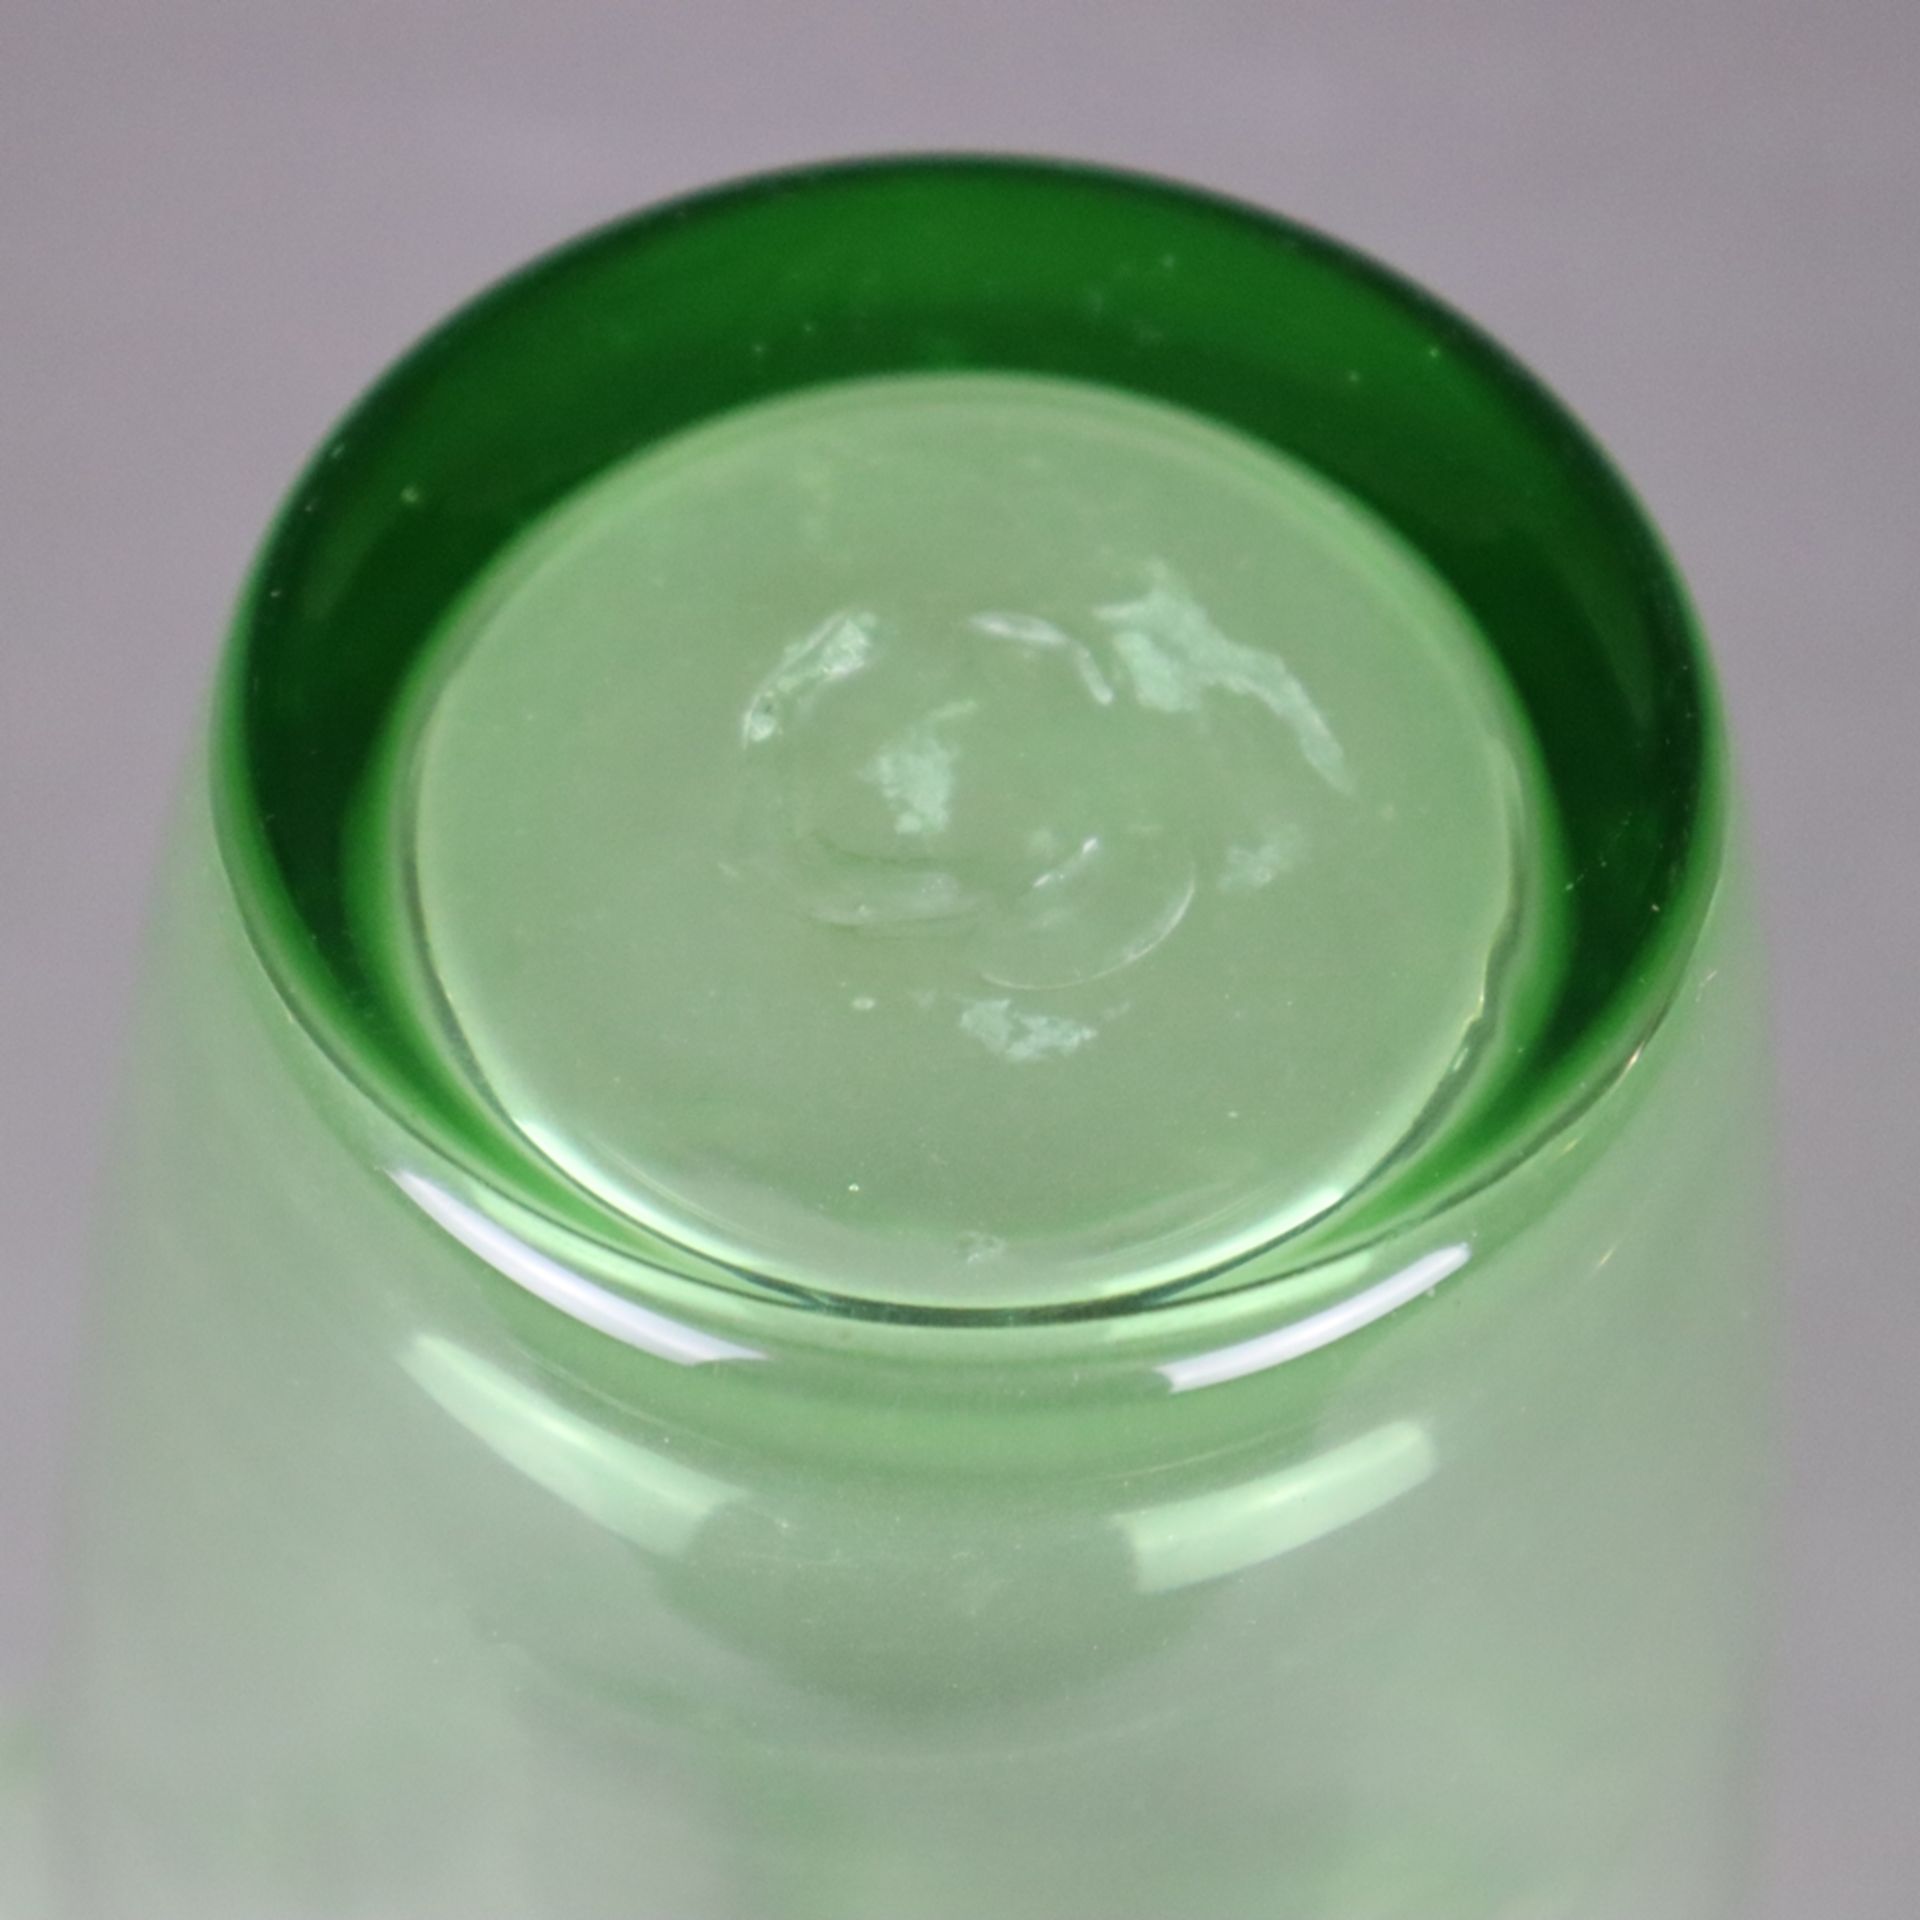 Ziervase in "Fazzoletto"- Form - Taschentuchvase, grünes Glas, mehrfach gefaltete Wandung, Boden - Bild 5 aus 7